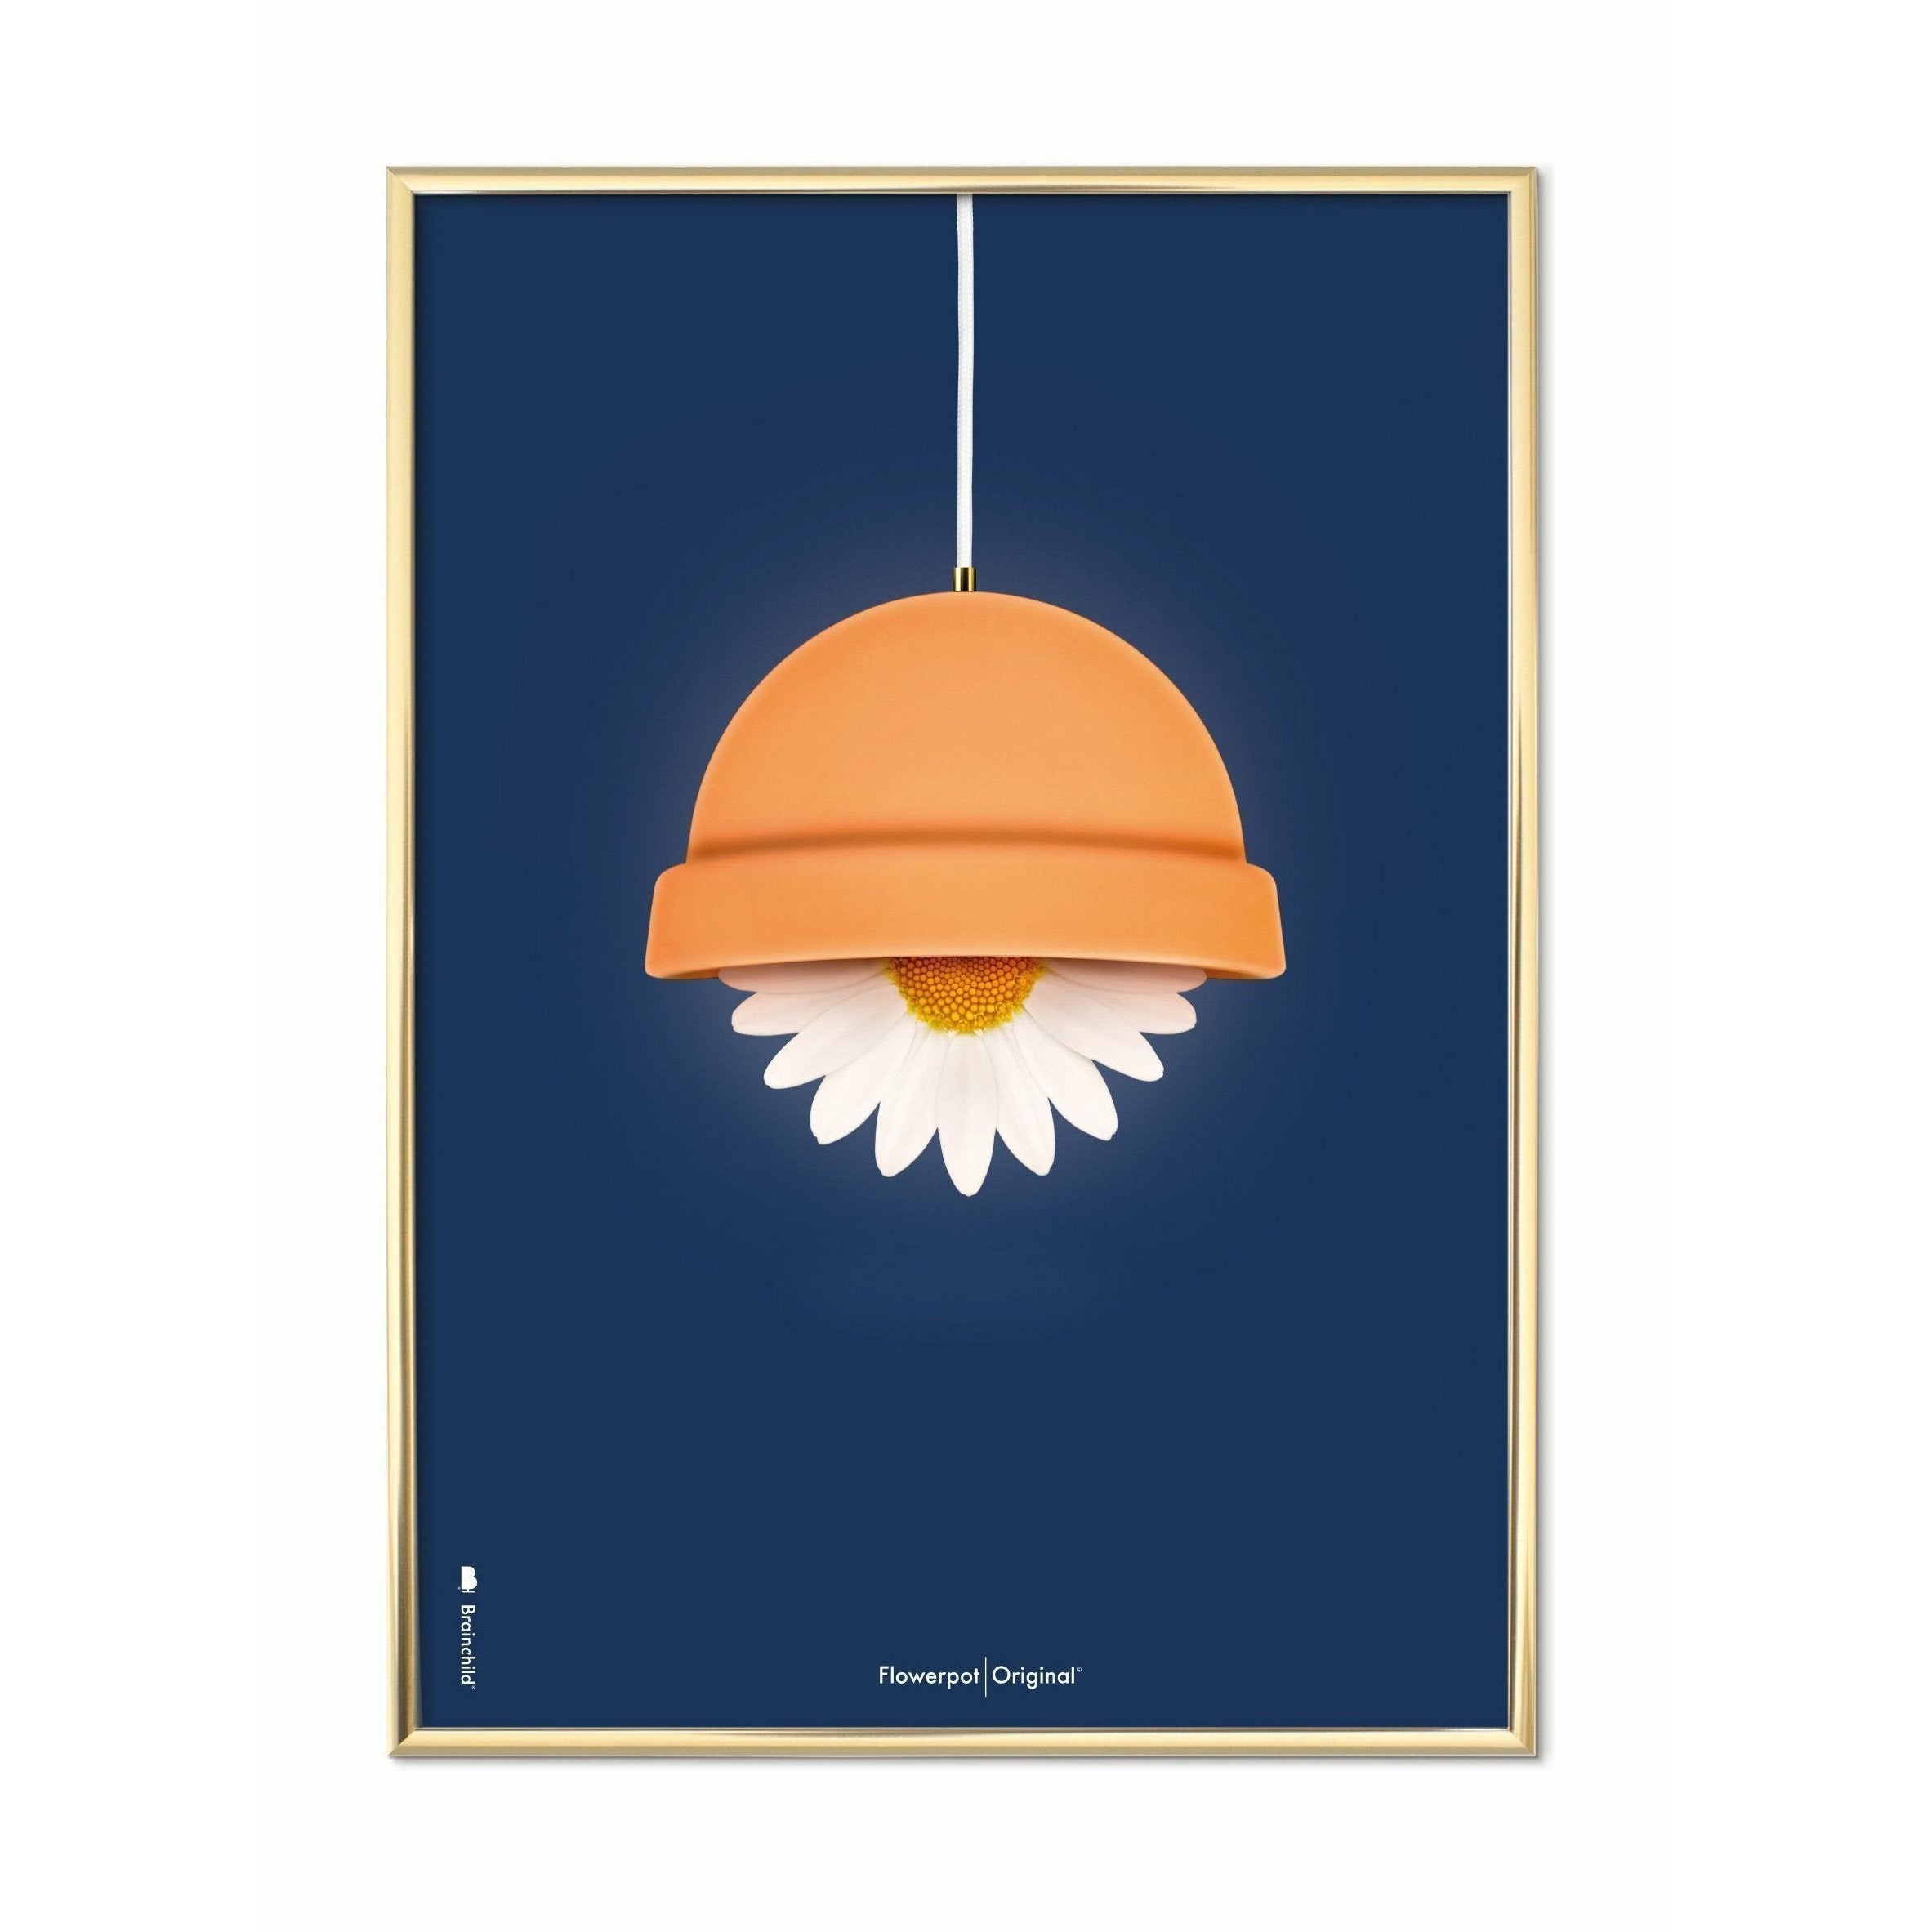 Klasický plakát Brainchild Flowerpot, mosazný rám 50x70 cm, tmavě modré pozadí